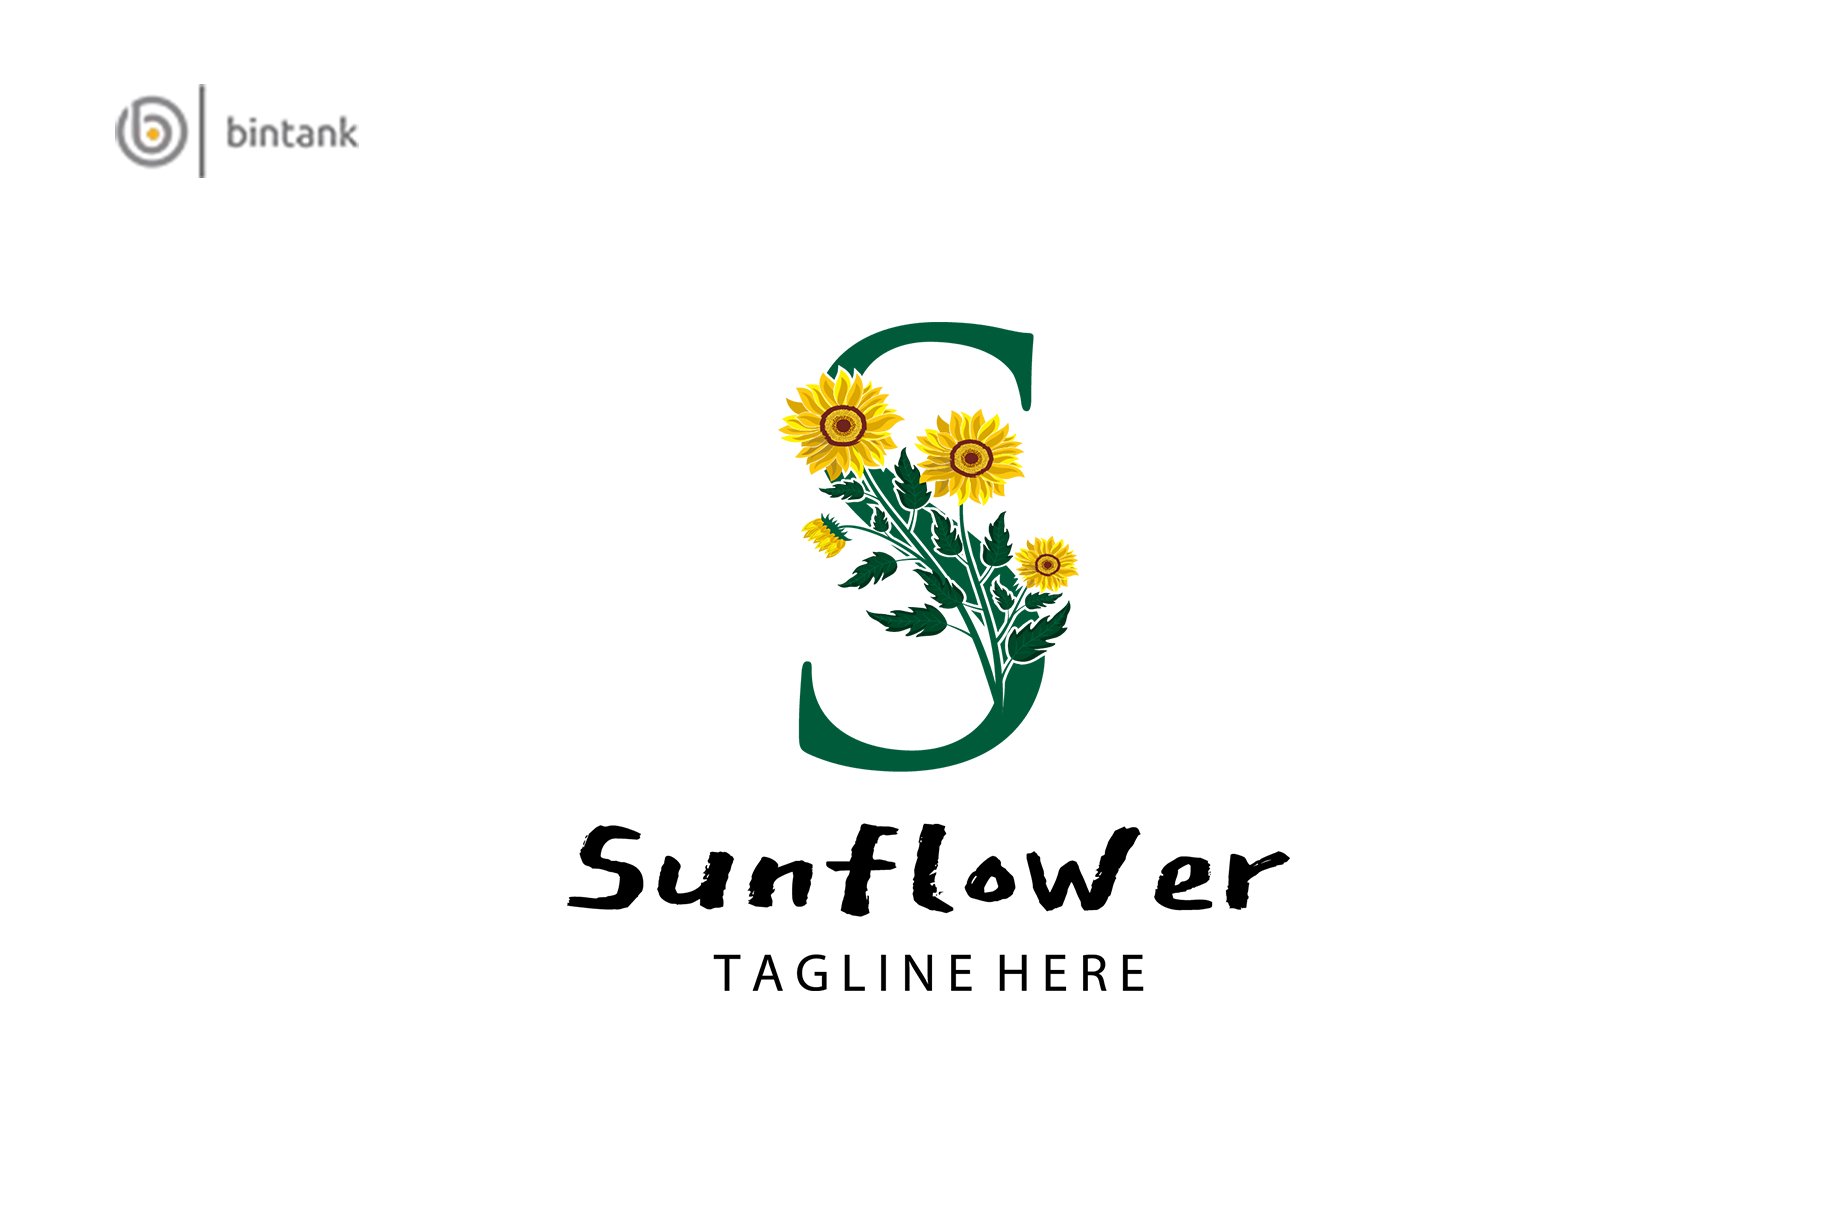 S Letter - Sunflower Logo cover image.